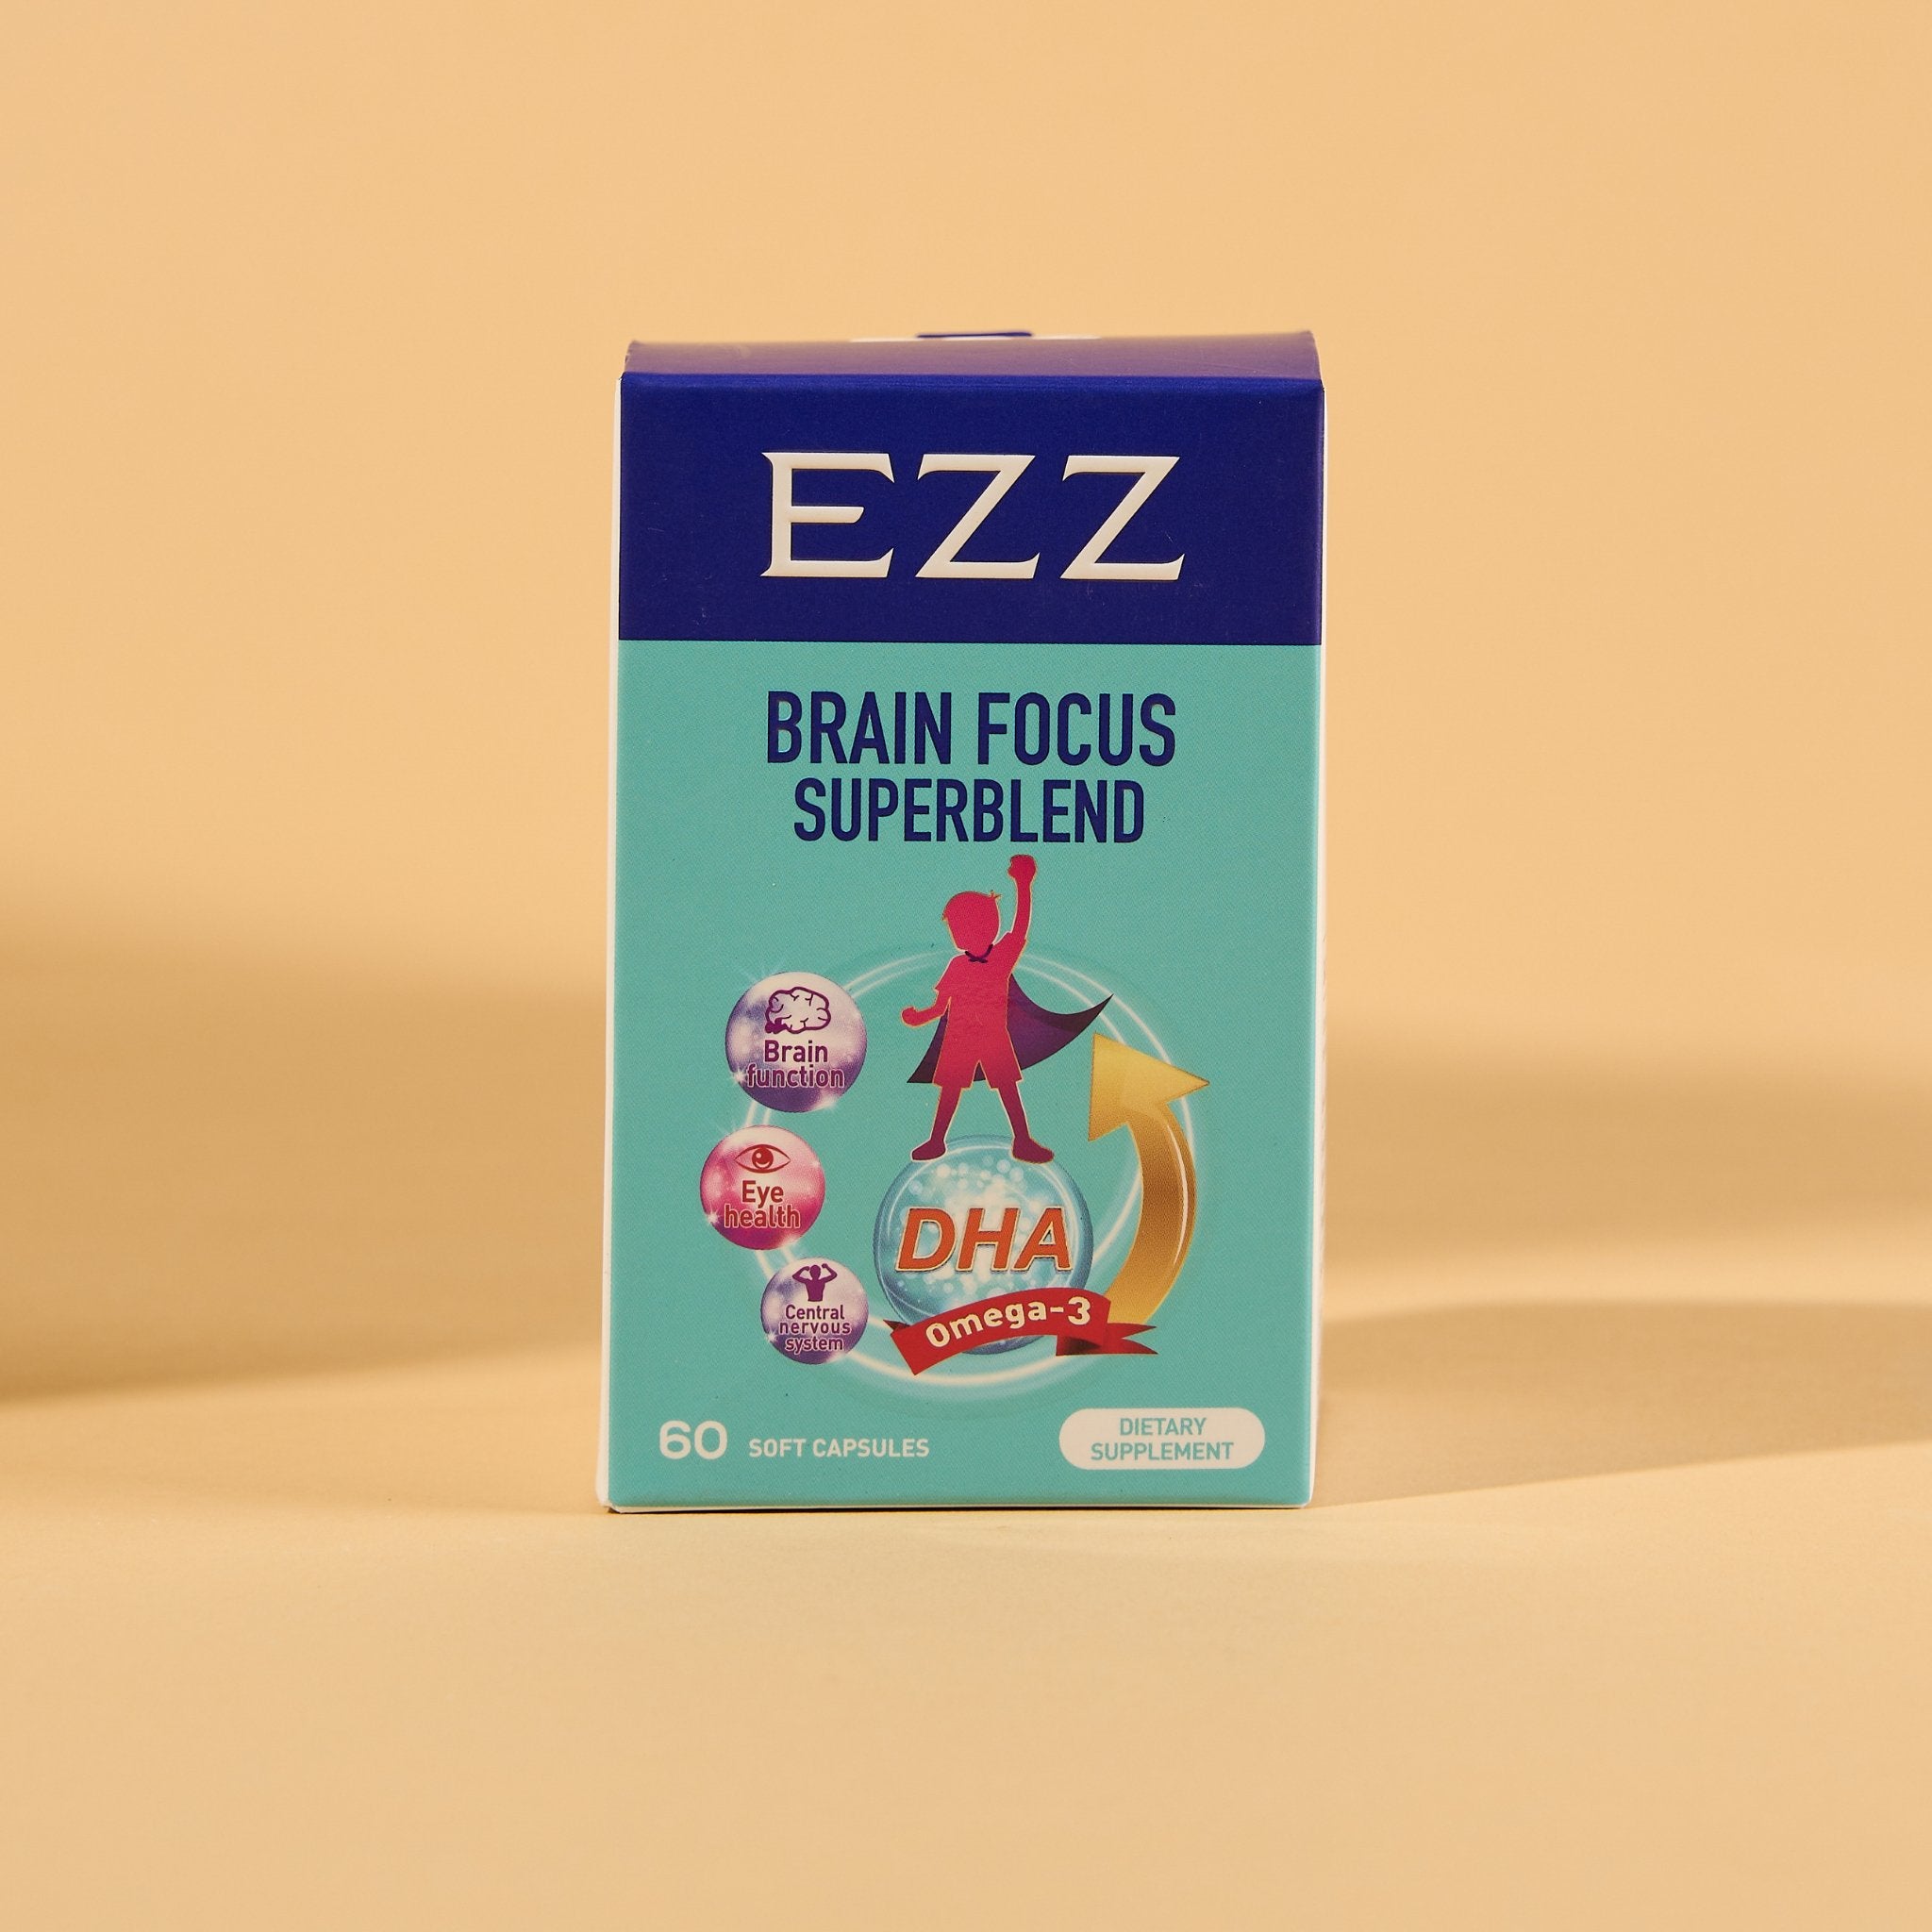 EZZ Brain Focus Superblend - EZZ OFFICIAL